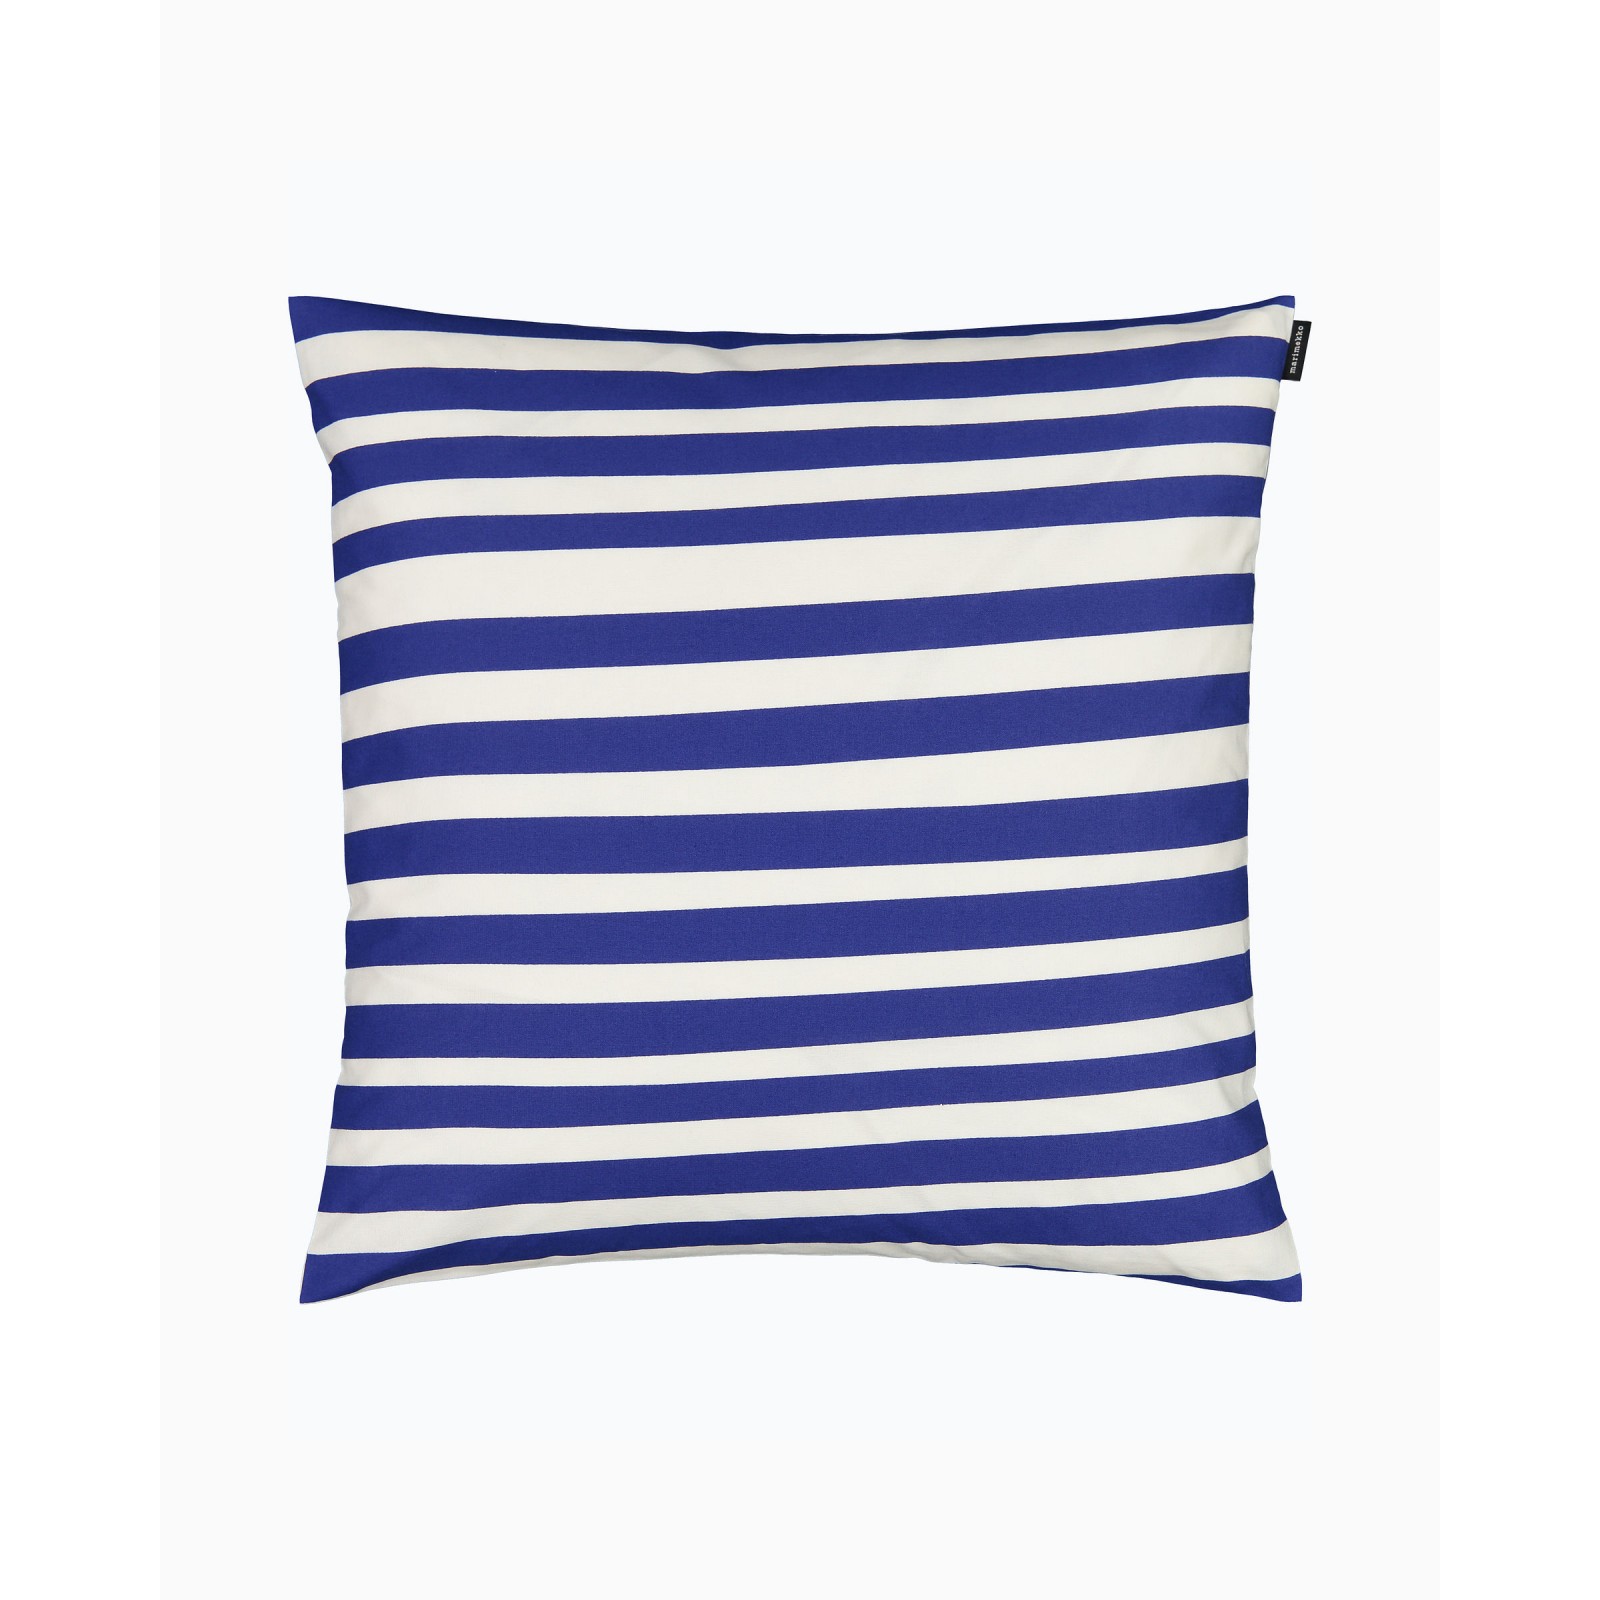 Uimari cushion cover 50x50cm white/blue